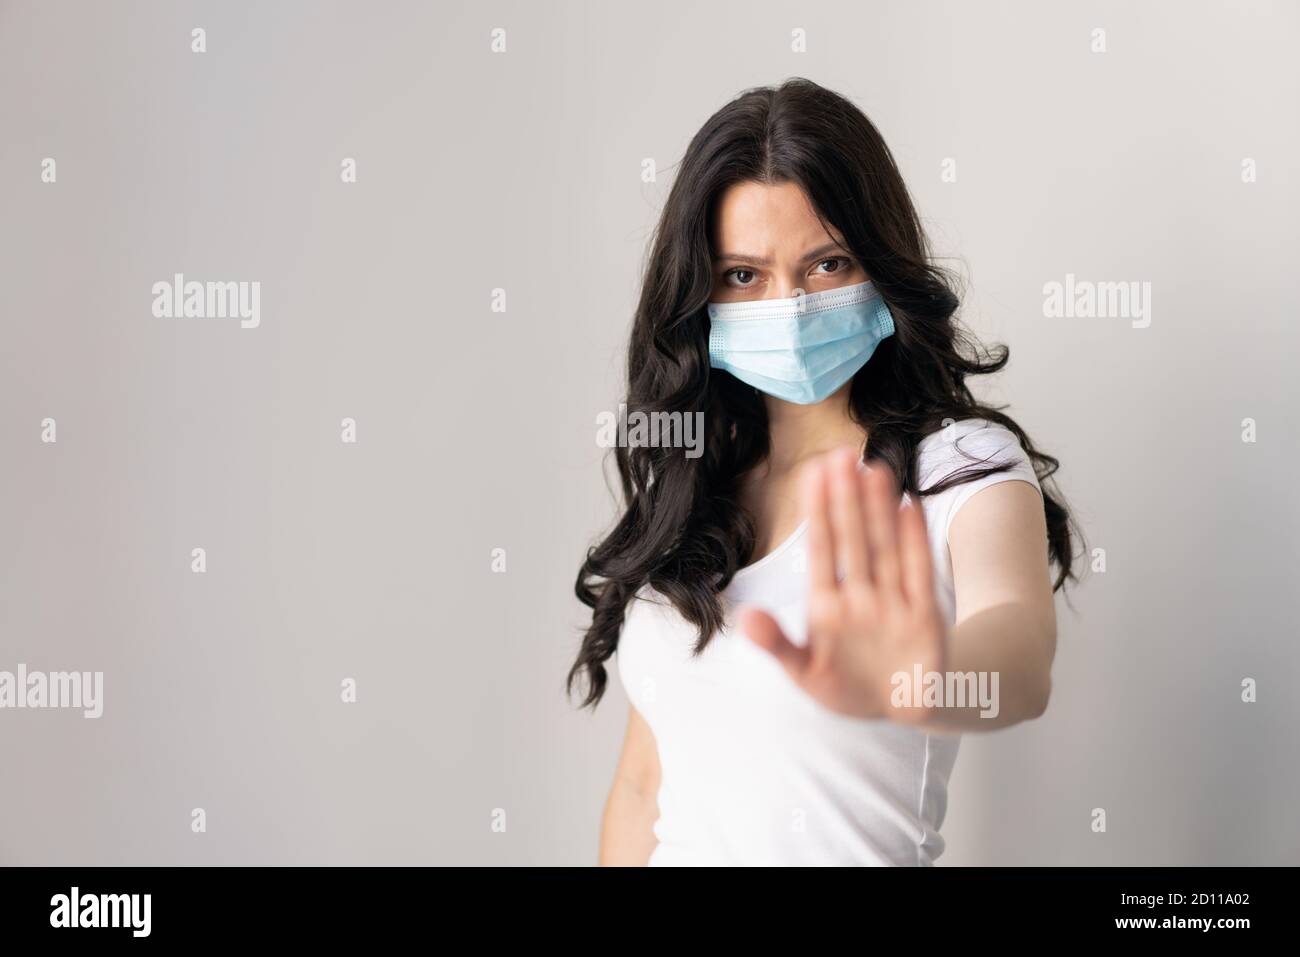 Femme portant un masque pour la protection contre la maladie et montre mains stop geste pour arrêter l'épidémie de virus corona. Un attrait pour rester à la maison. Concept de coronavirus. Banque D'Images